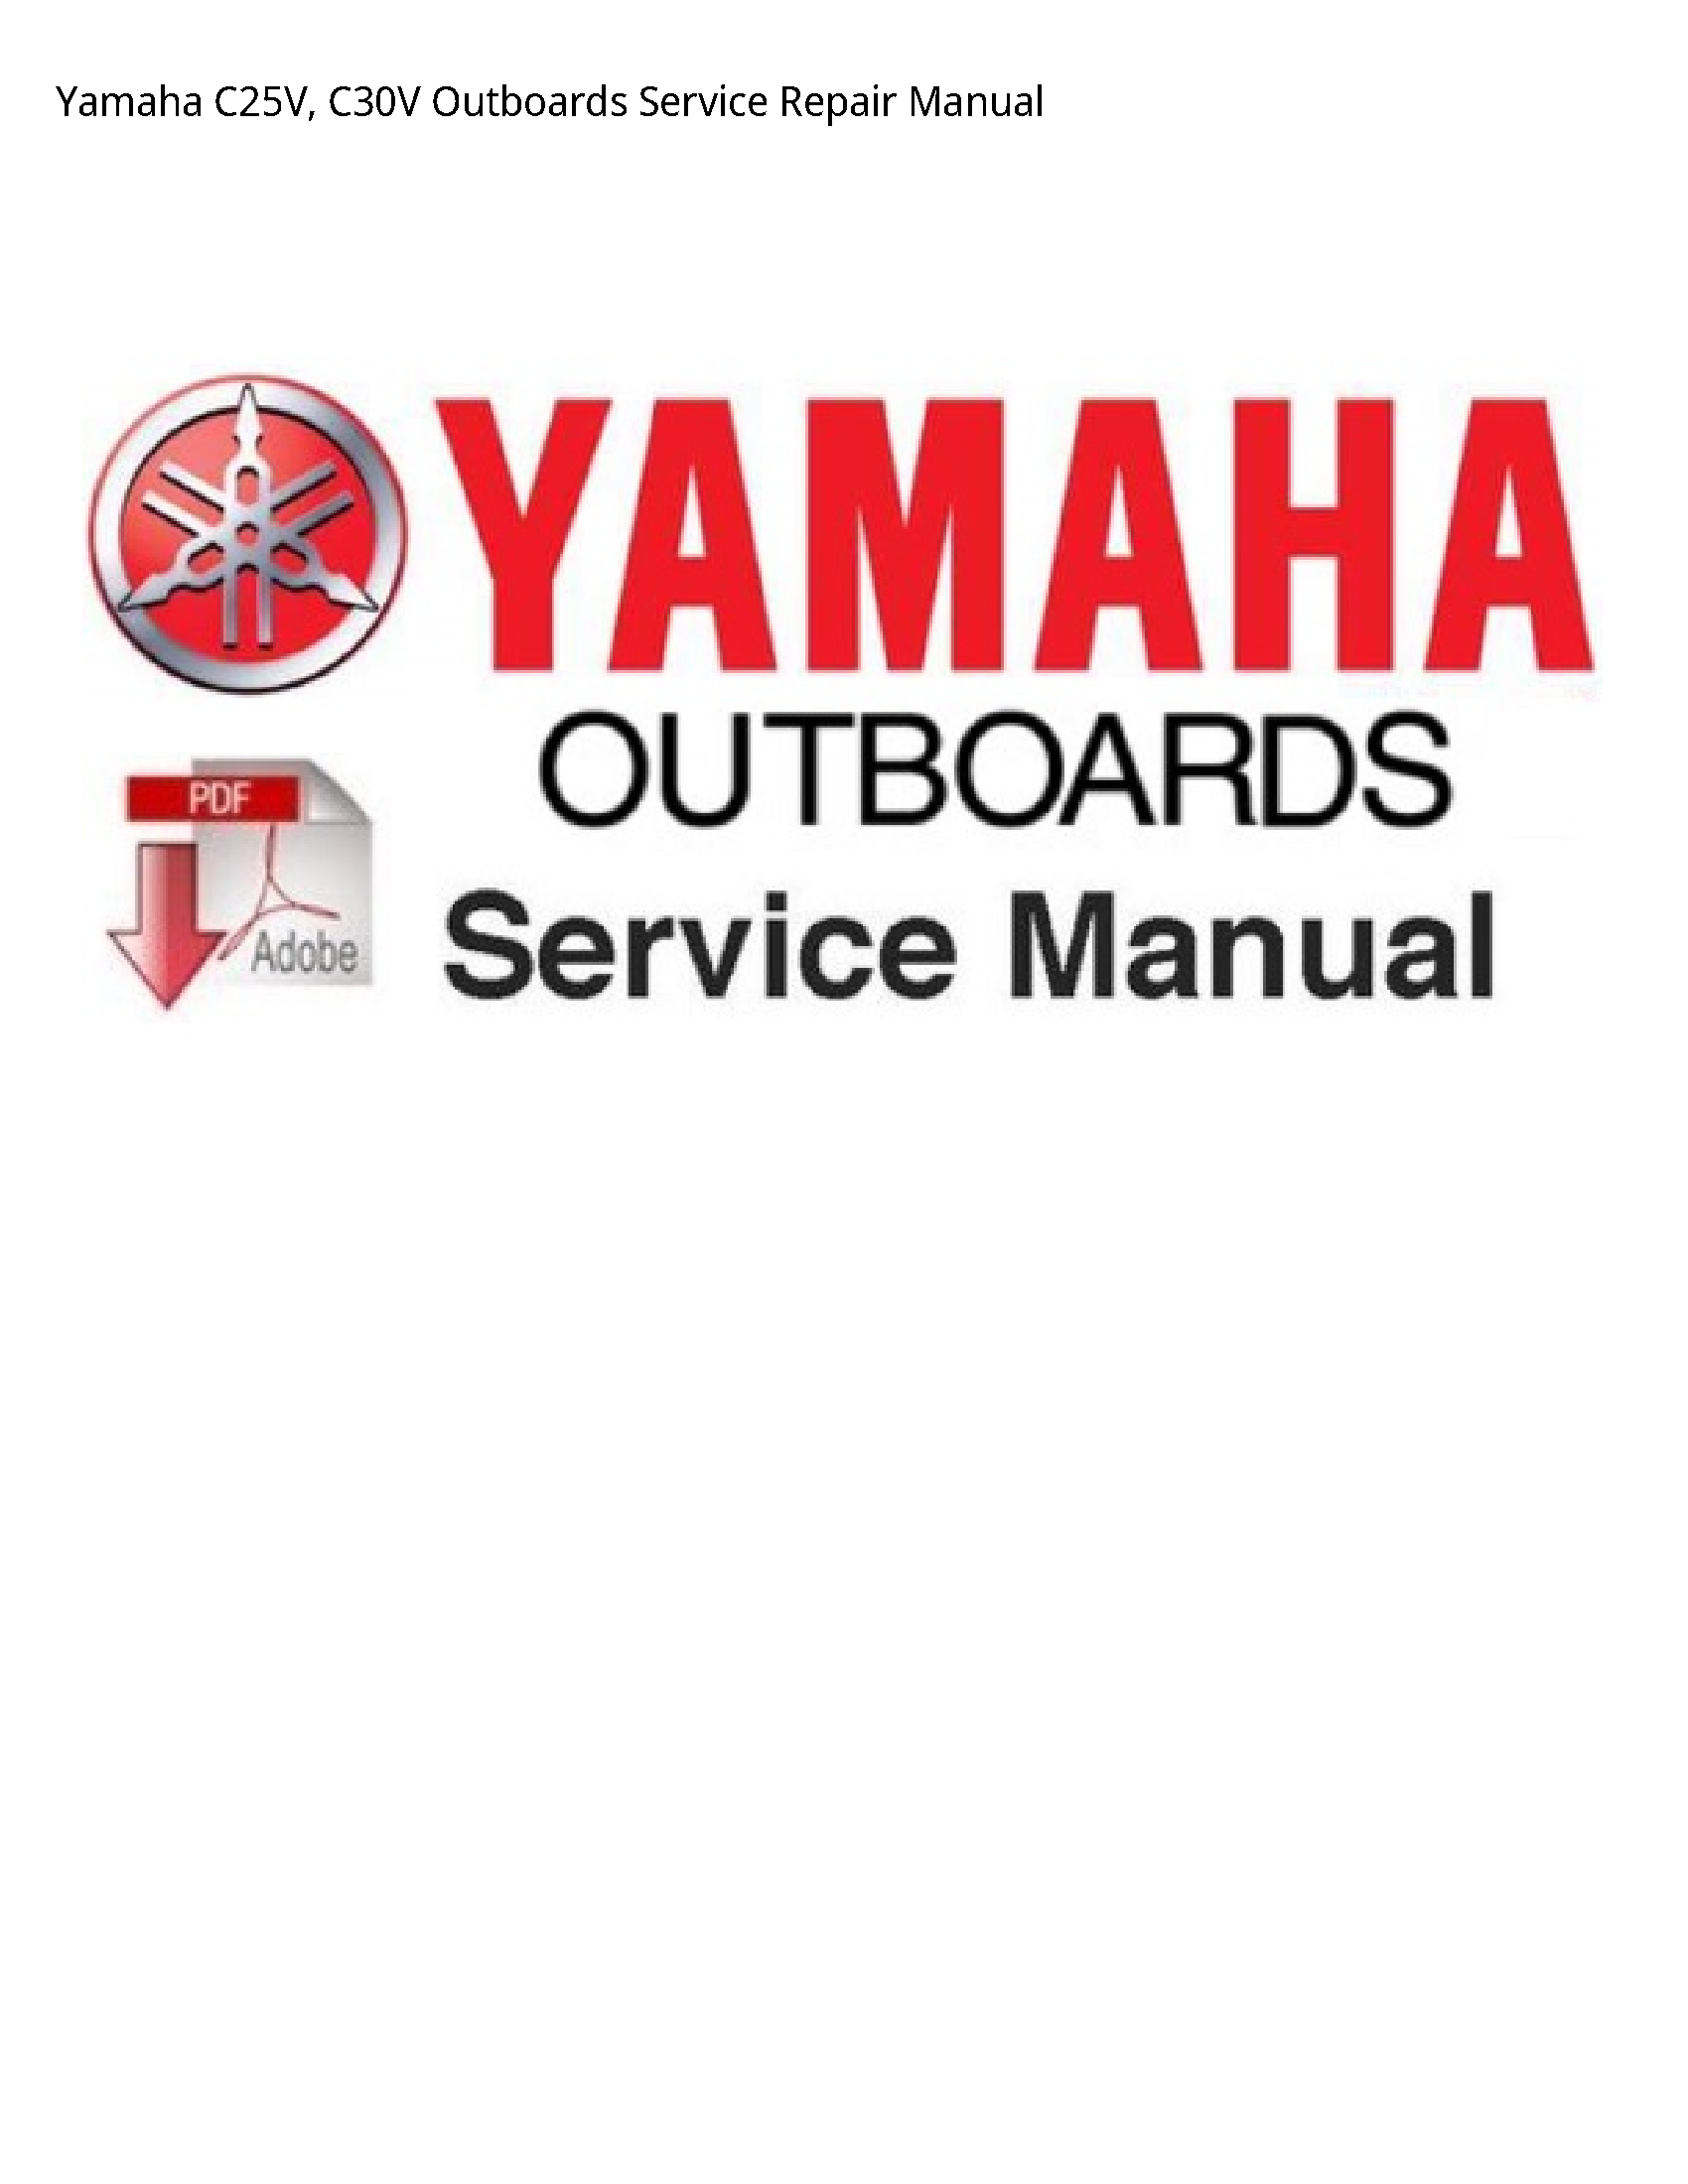 Yamaha C25V Outboards manual